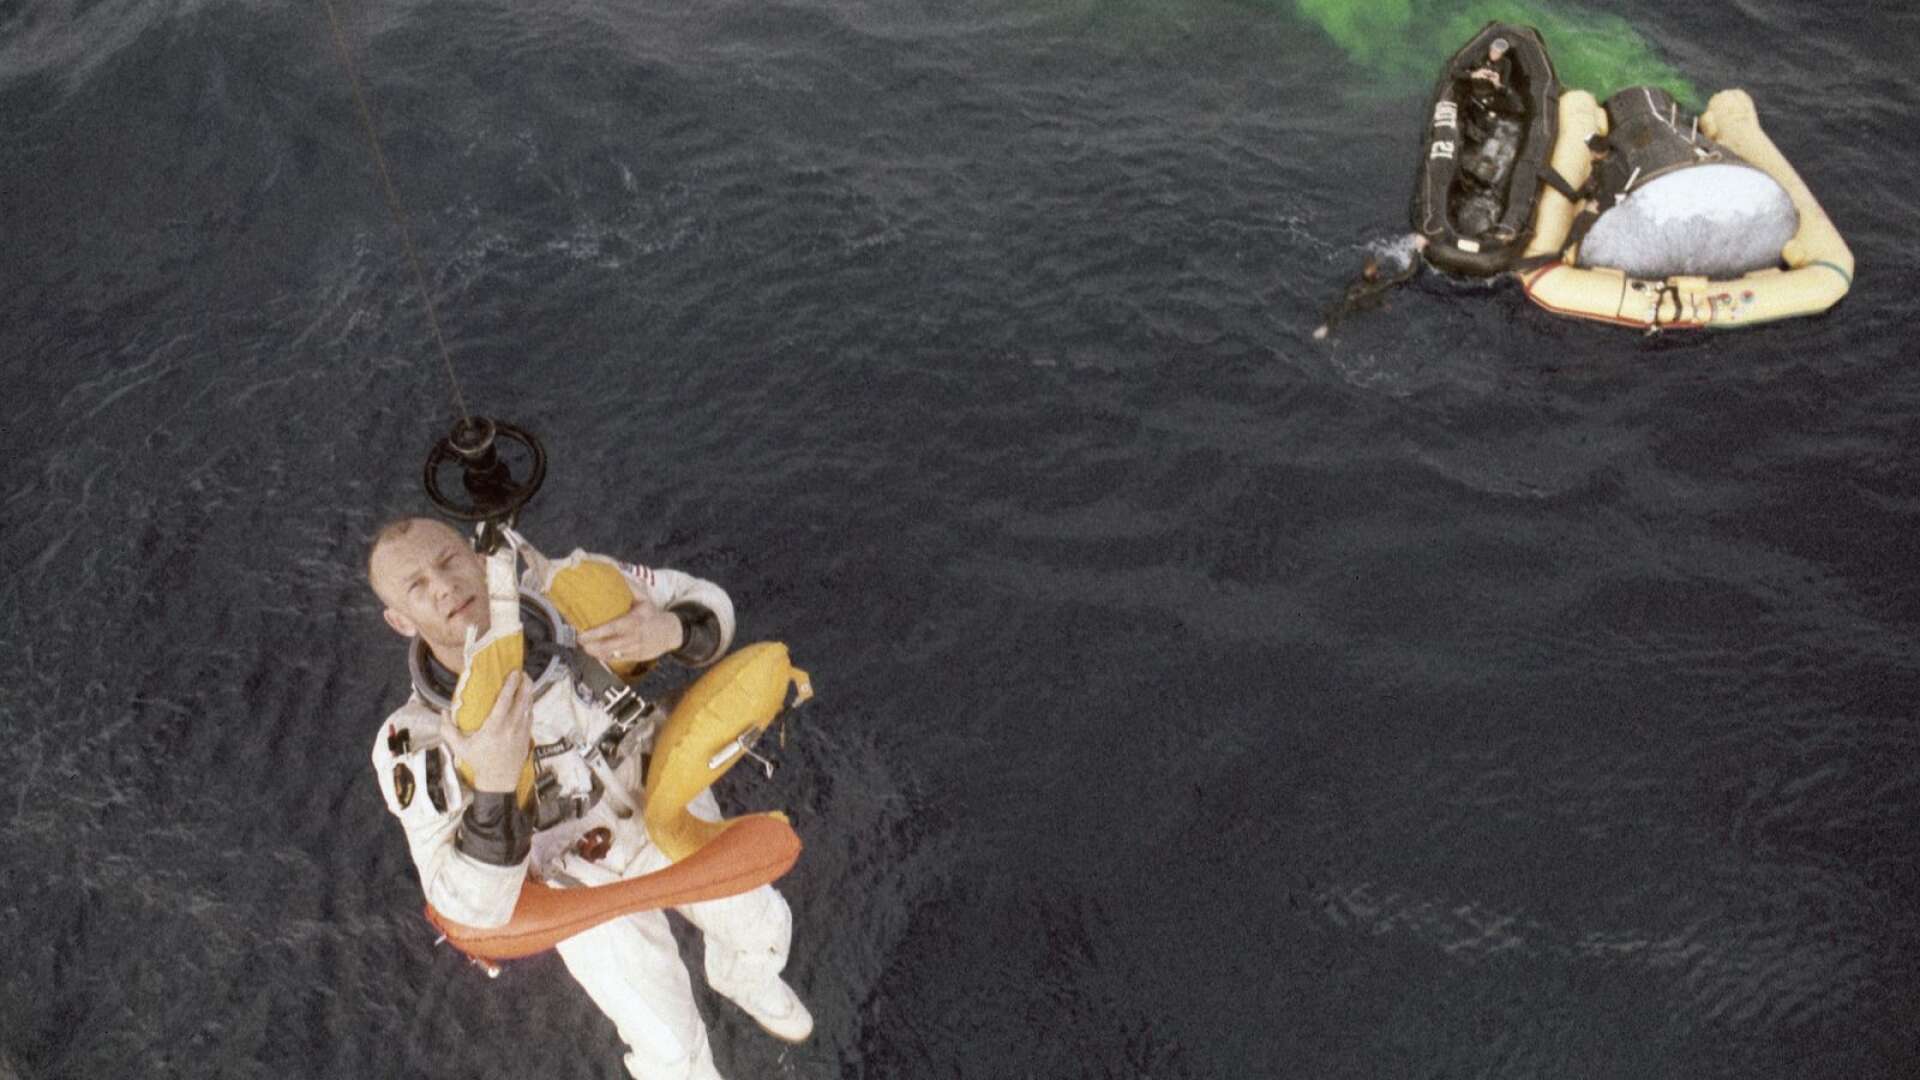 Buzz och delar av rymdkapslen i vattnet under räddningsuppdraget av Apollo 11:s astronauter.